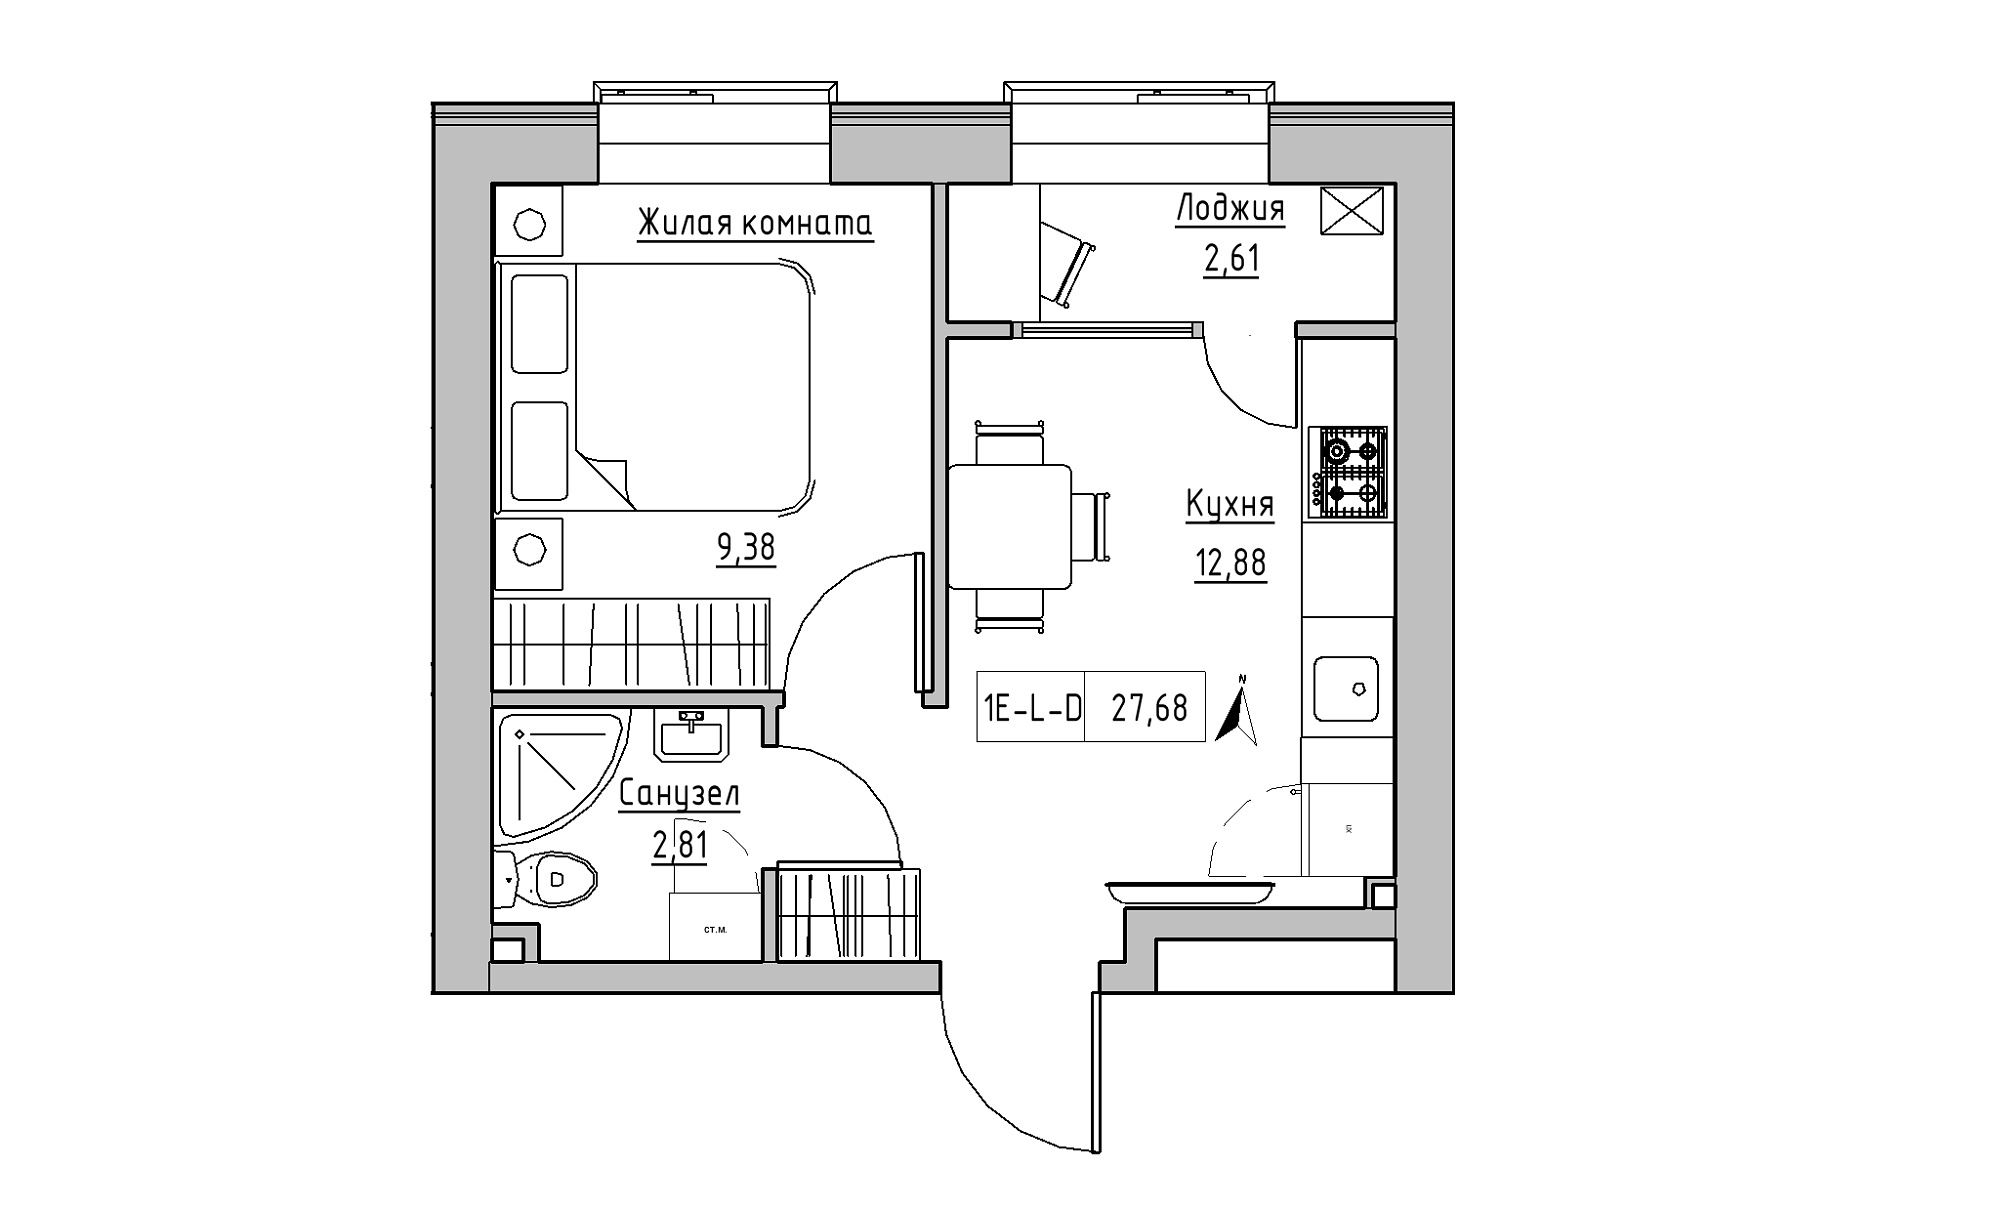 Планировка 1-к квартира площей 27.68м2, KS-016-03/0001.